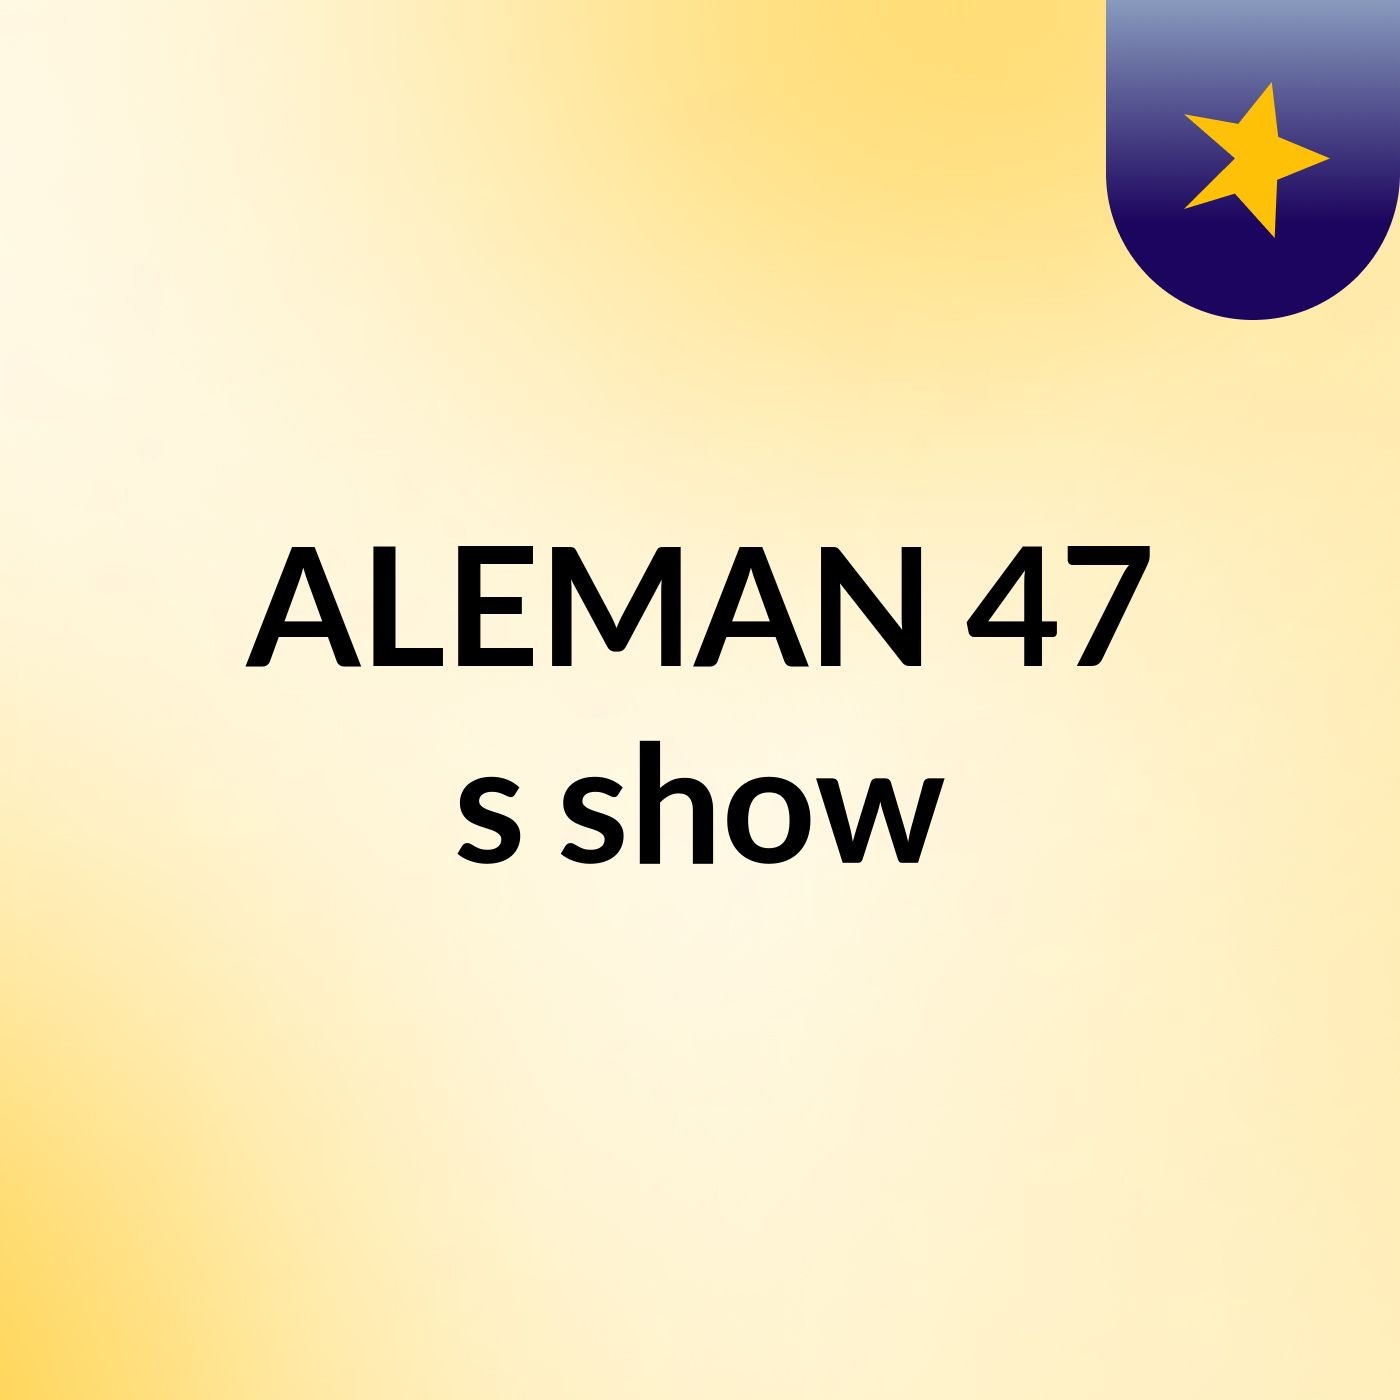 ALEMAN 47's show